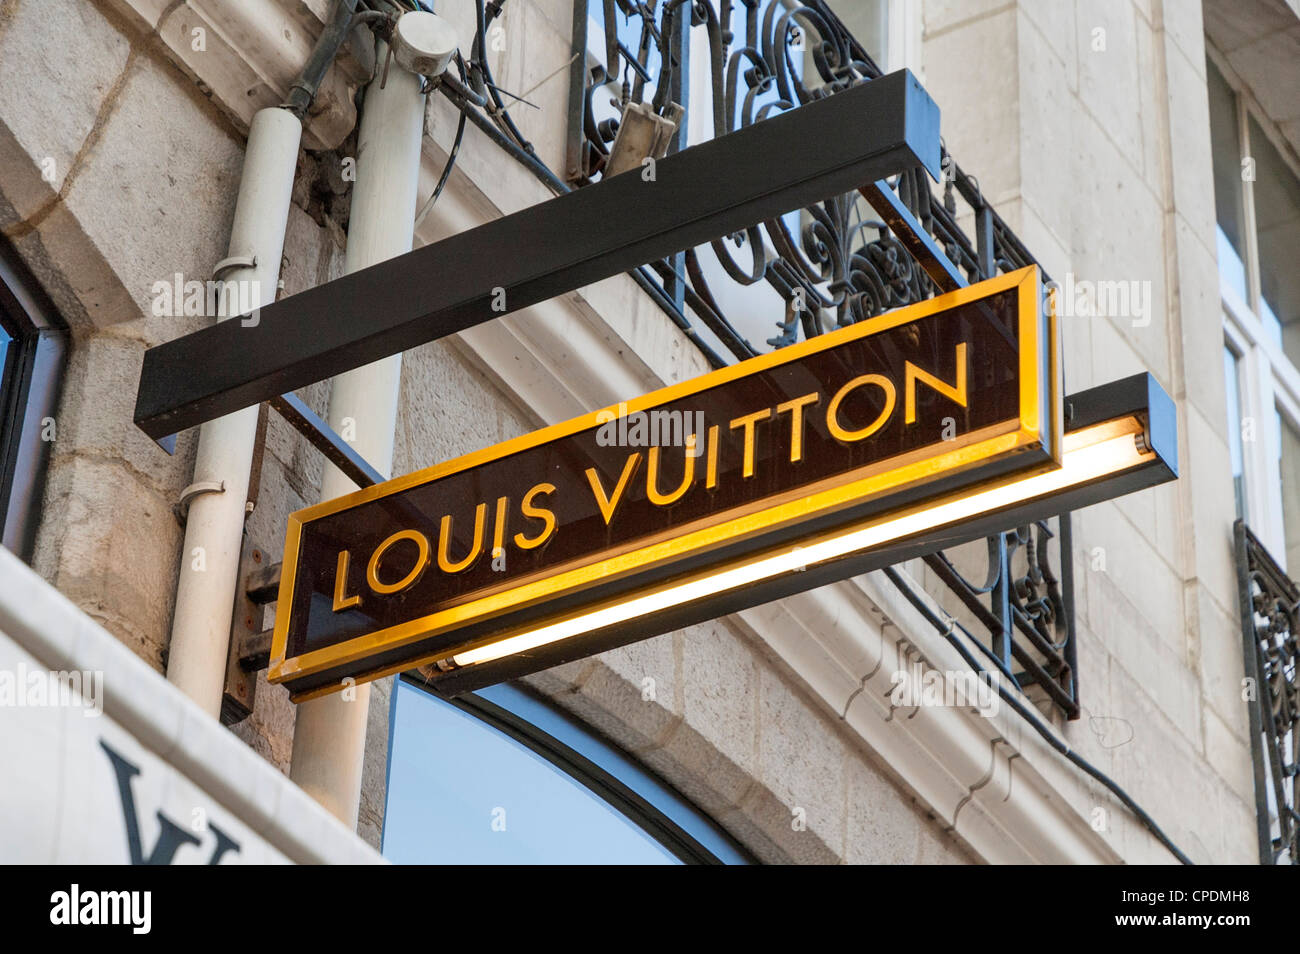 Berühmte französische Mode Haus Louis Vuitton Schilder, Frankreich, Europa  Stockfotografie - Alamy